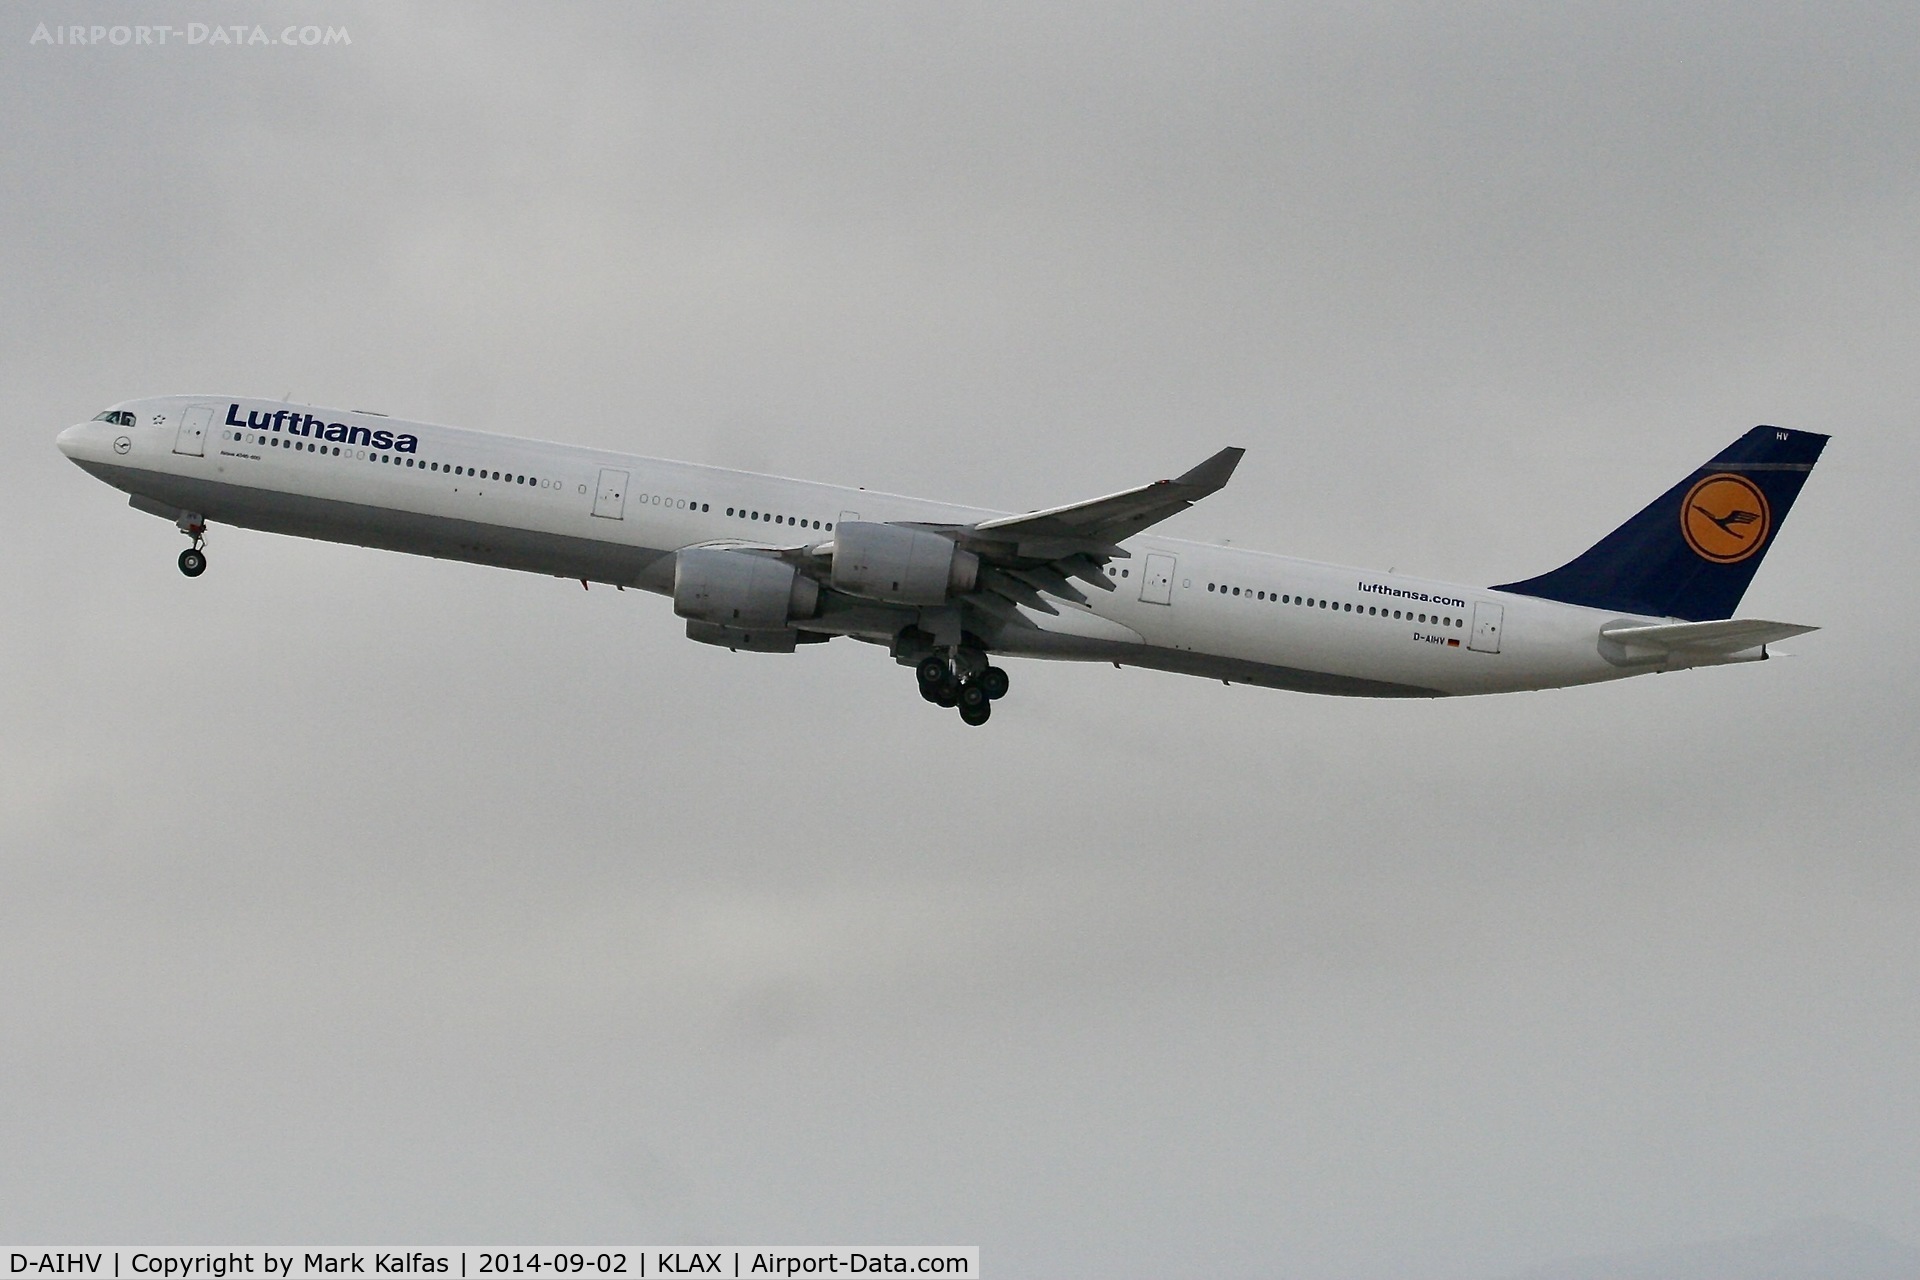 D-AIHV, 2008 Airbus A340-642X C/N 897, Lufthansa Airbus A340-642X, D-AIHV departing 25R LAX